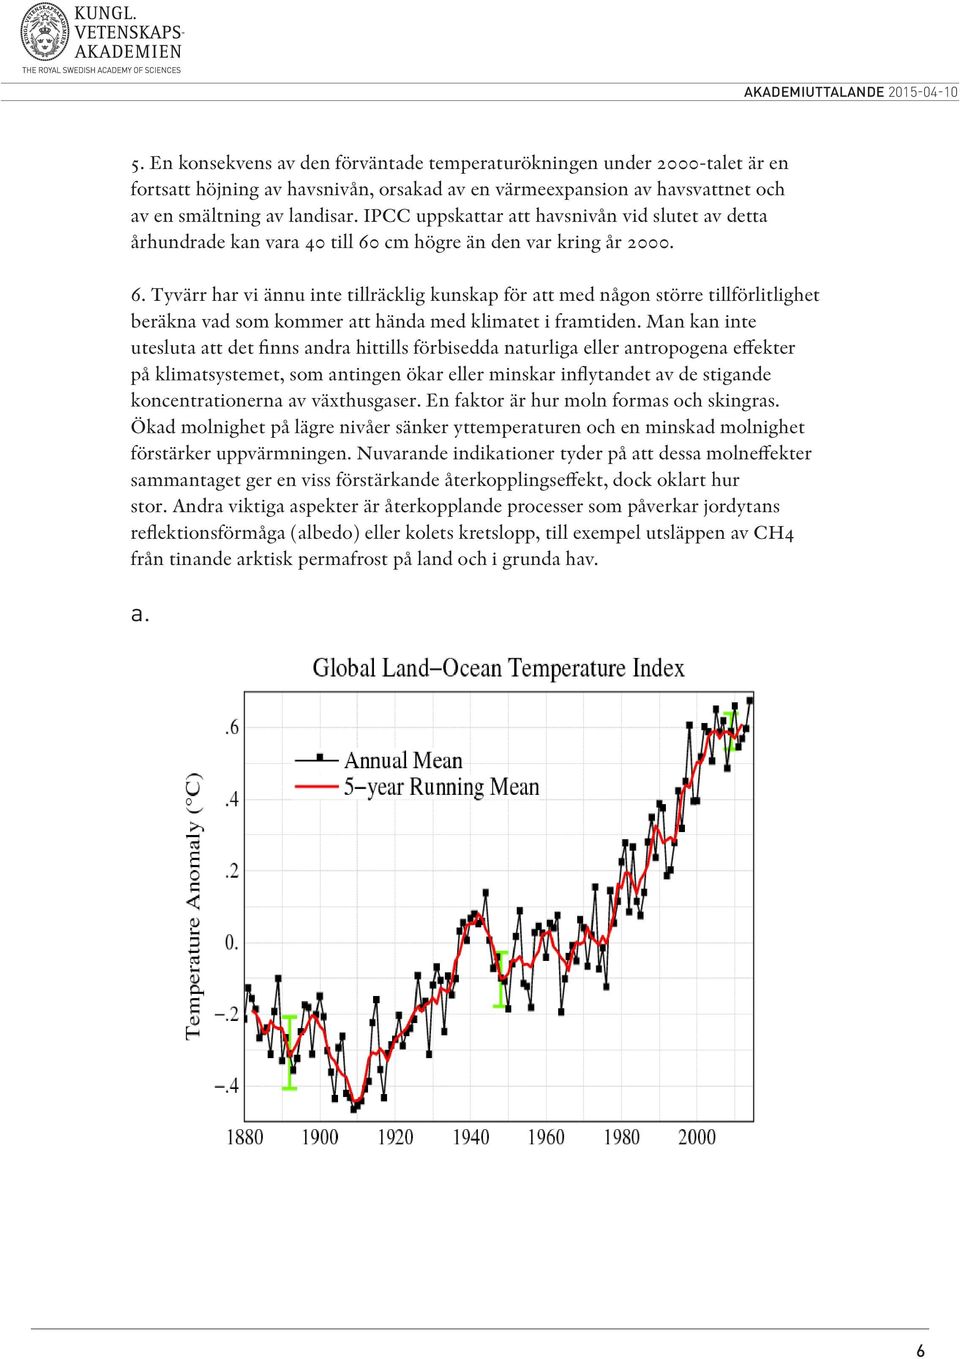 cm högre än den var kring år 2000. 6. Tyvärr har vi ännu inte tillräcklig kunskap för att med någon större tillförlitlighet beräkna vad som kommer att hända med klimatet i framtiden.